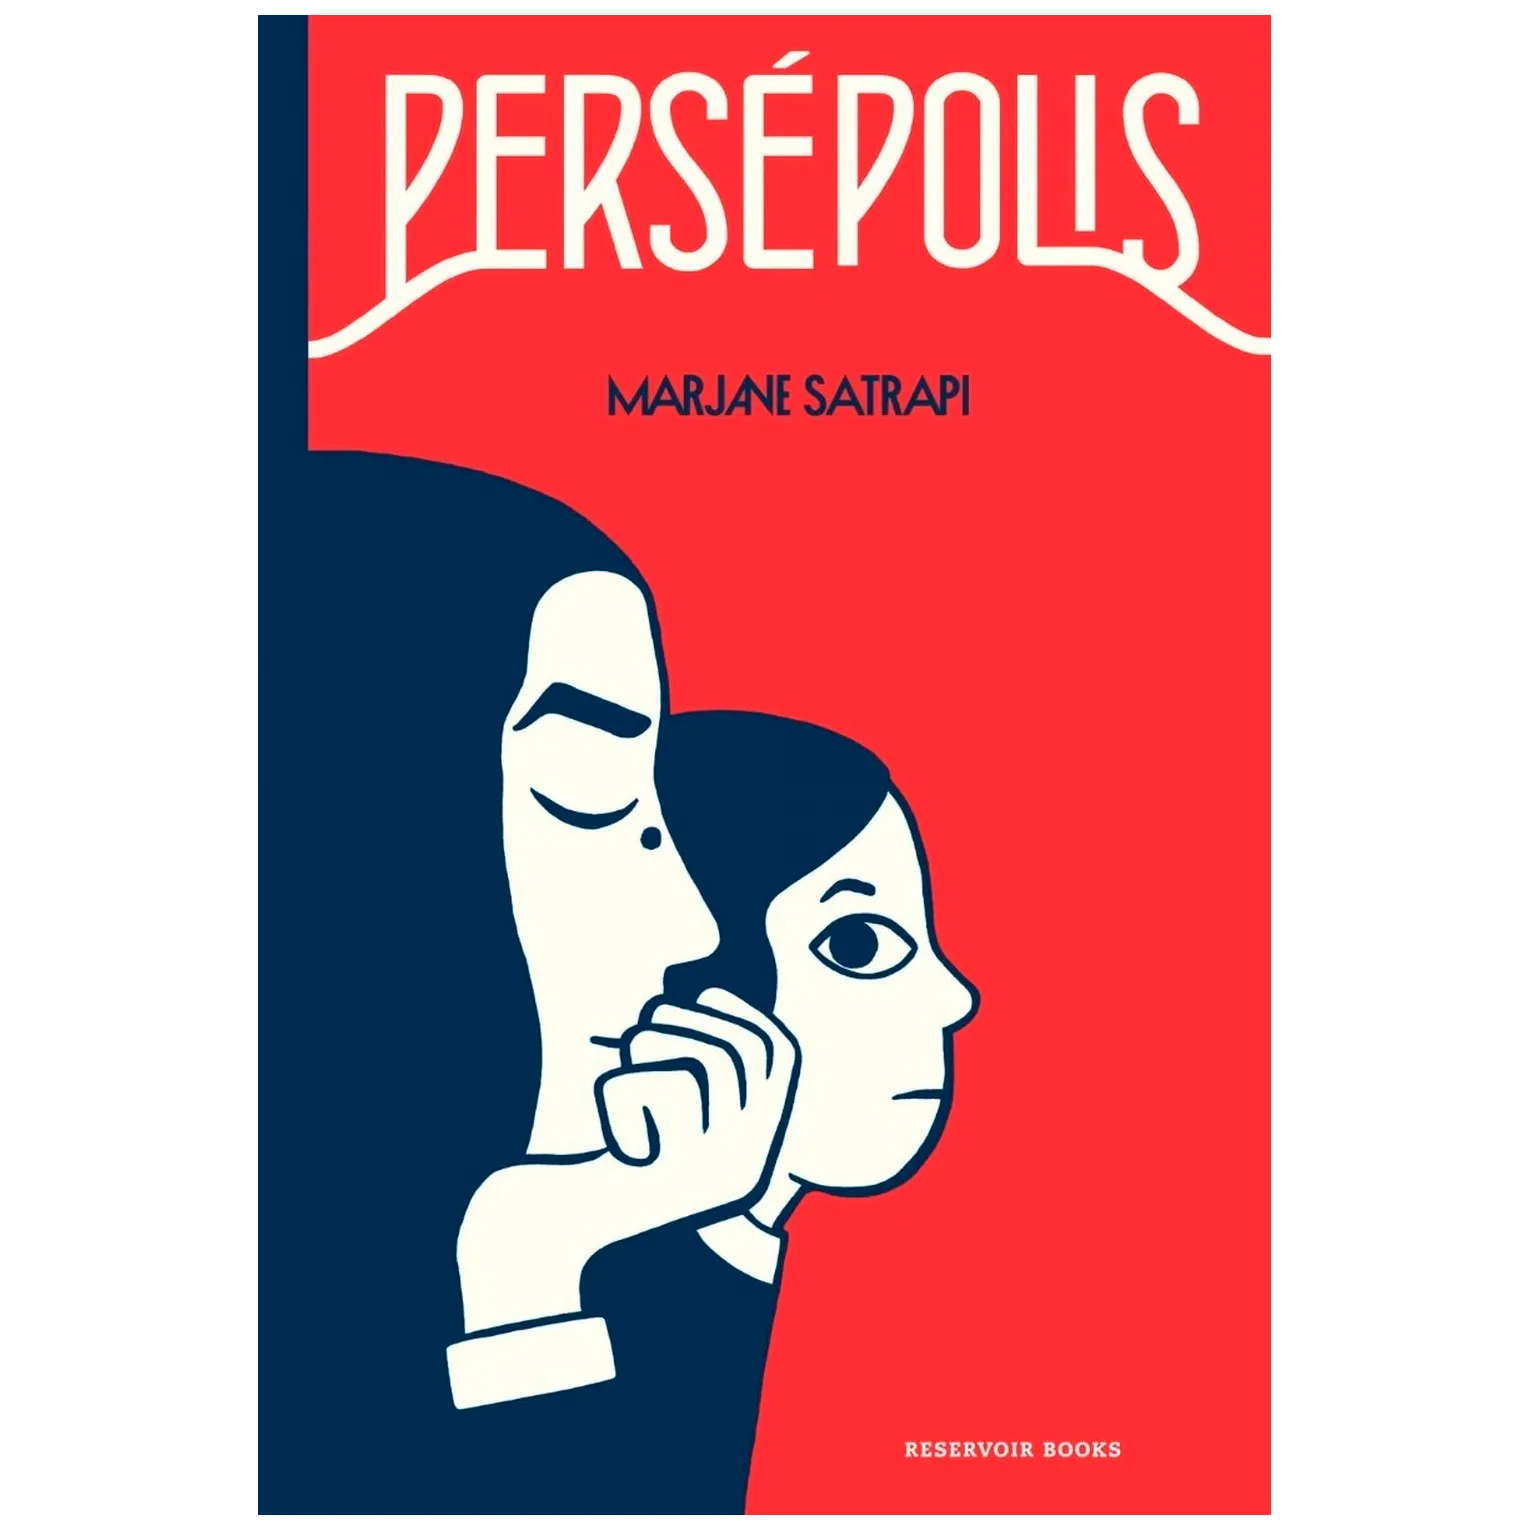 Persépolis / Edición Definitiva / Marjane Satrapi